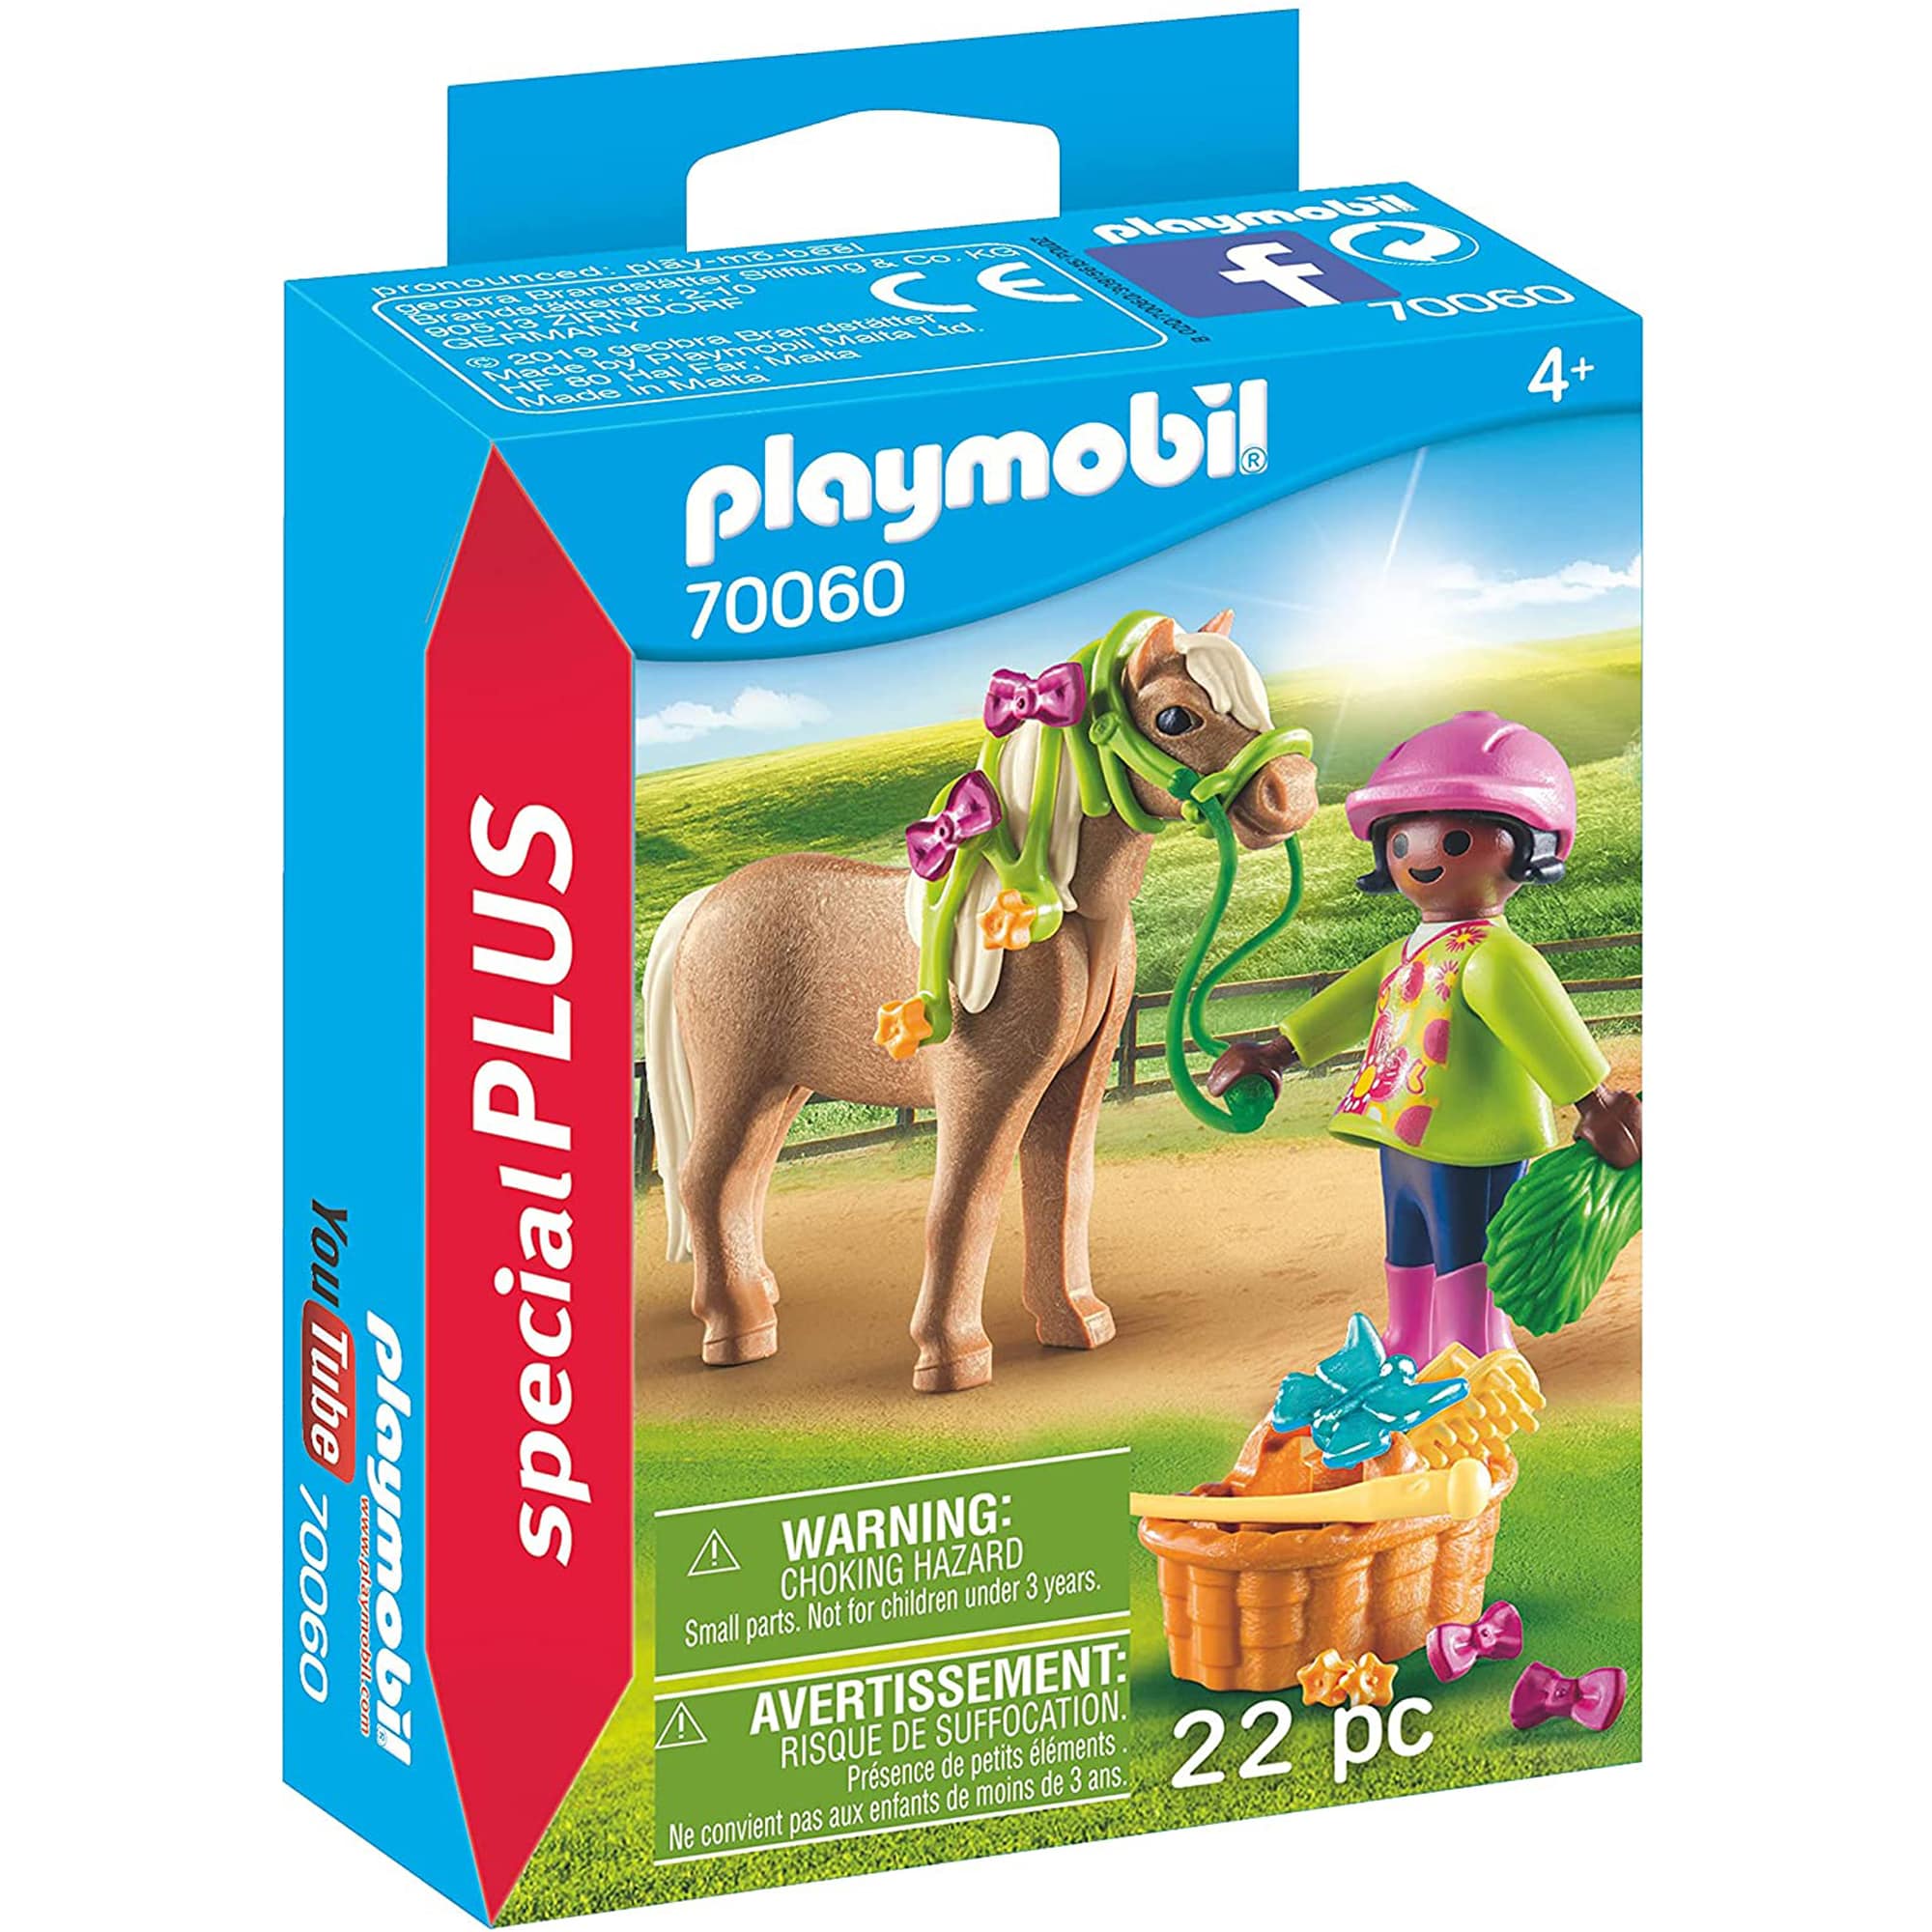 Playmobil 70060 Mädchen mit Pony specialPlus  GASCHer's Spielwarenshop   